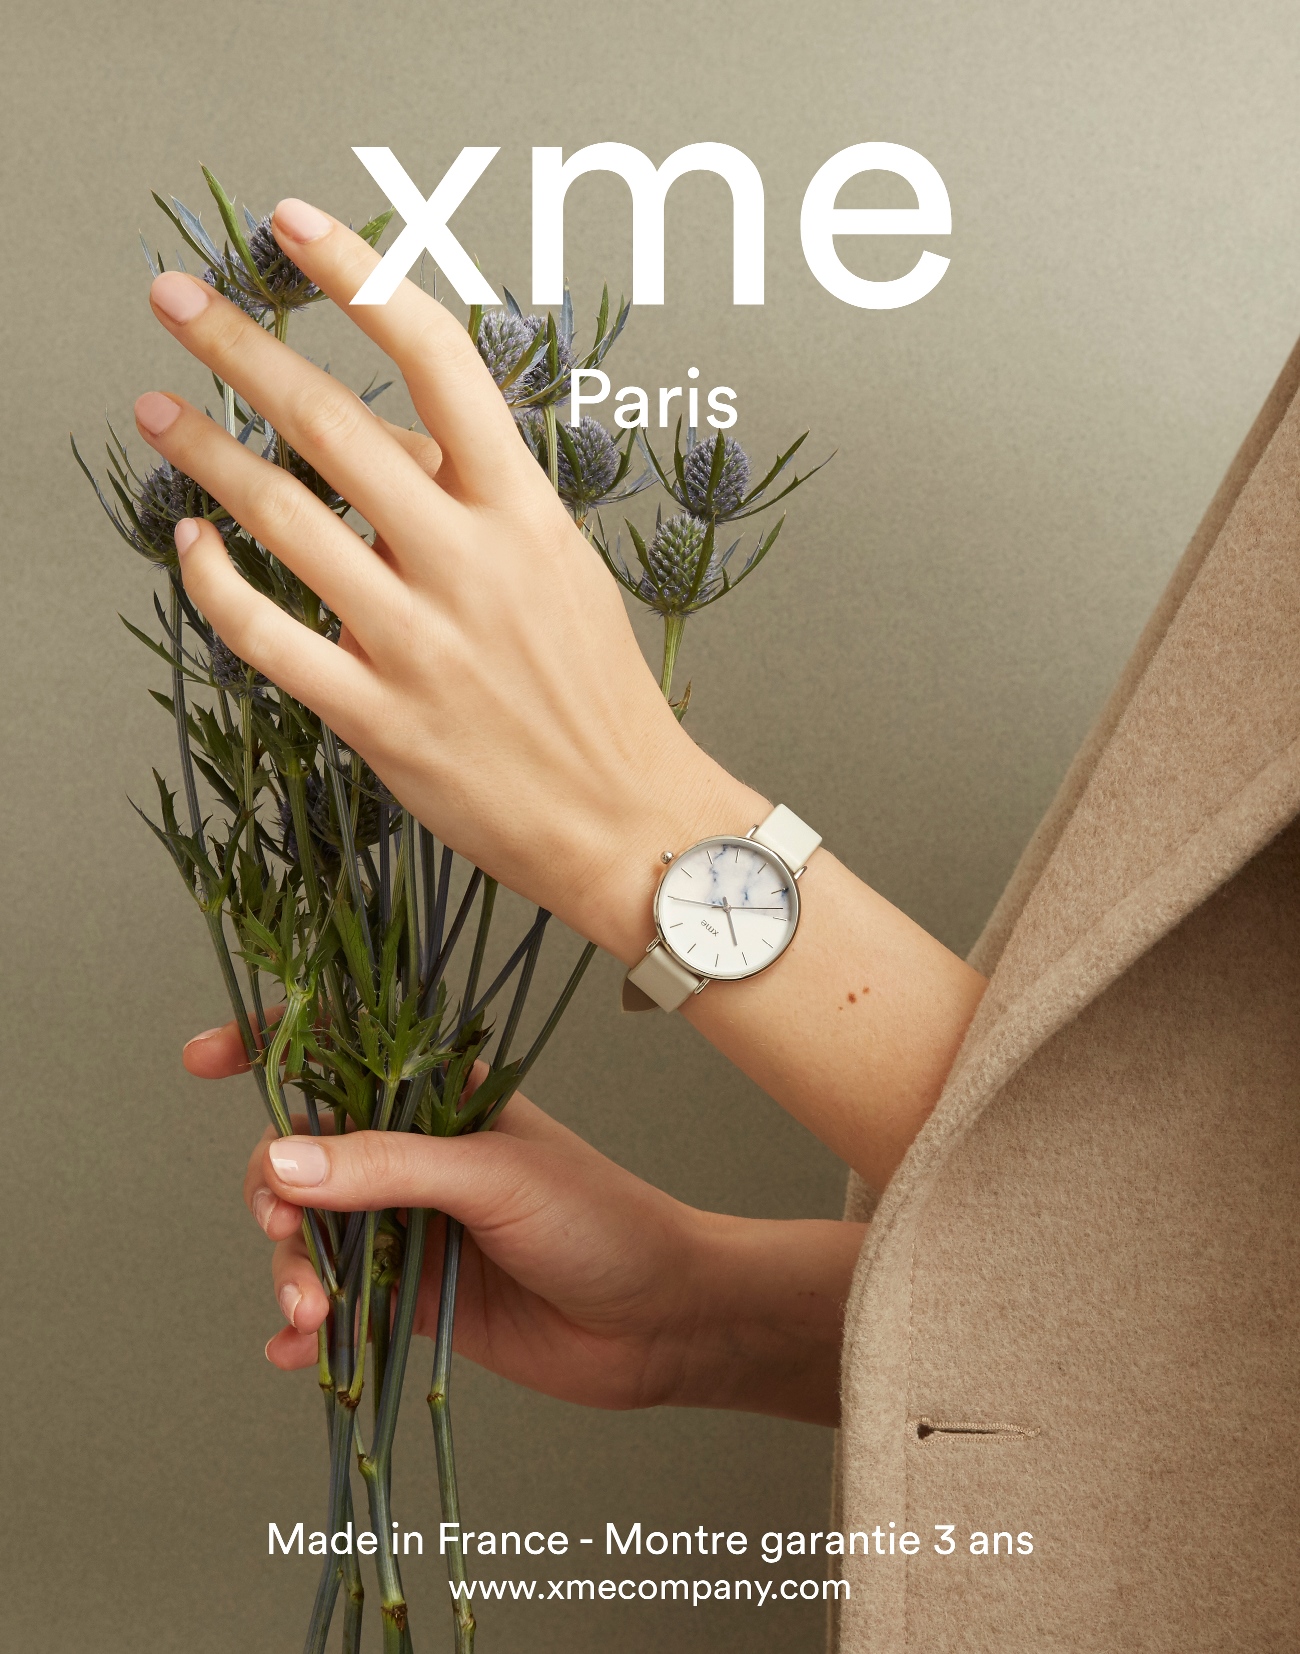 フランスの腕時計ブランド「ＸＭＥ」(エックスミー)から、花の名が付い